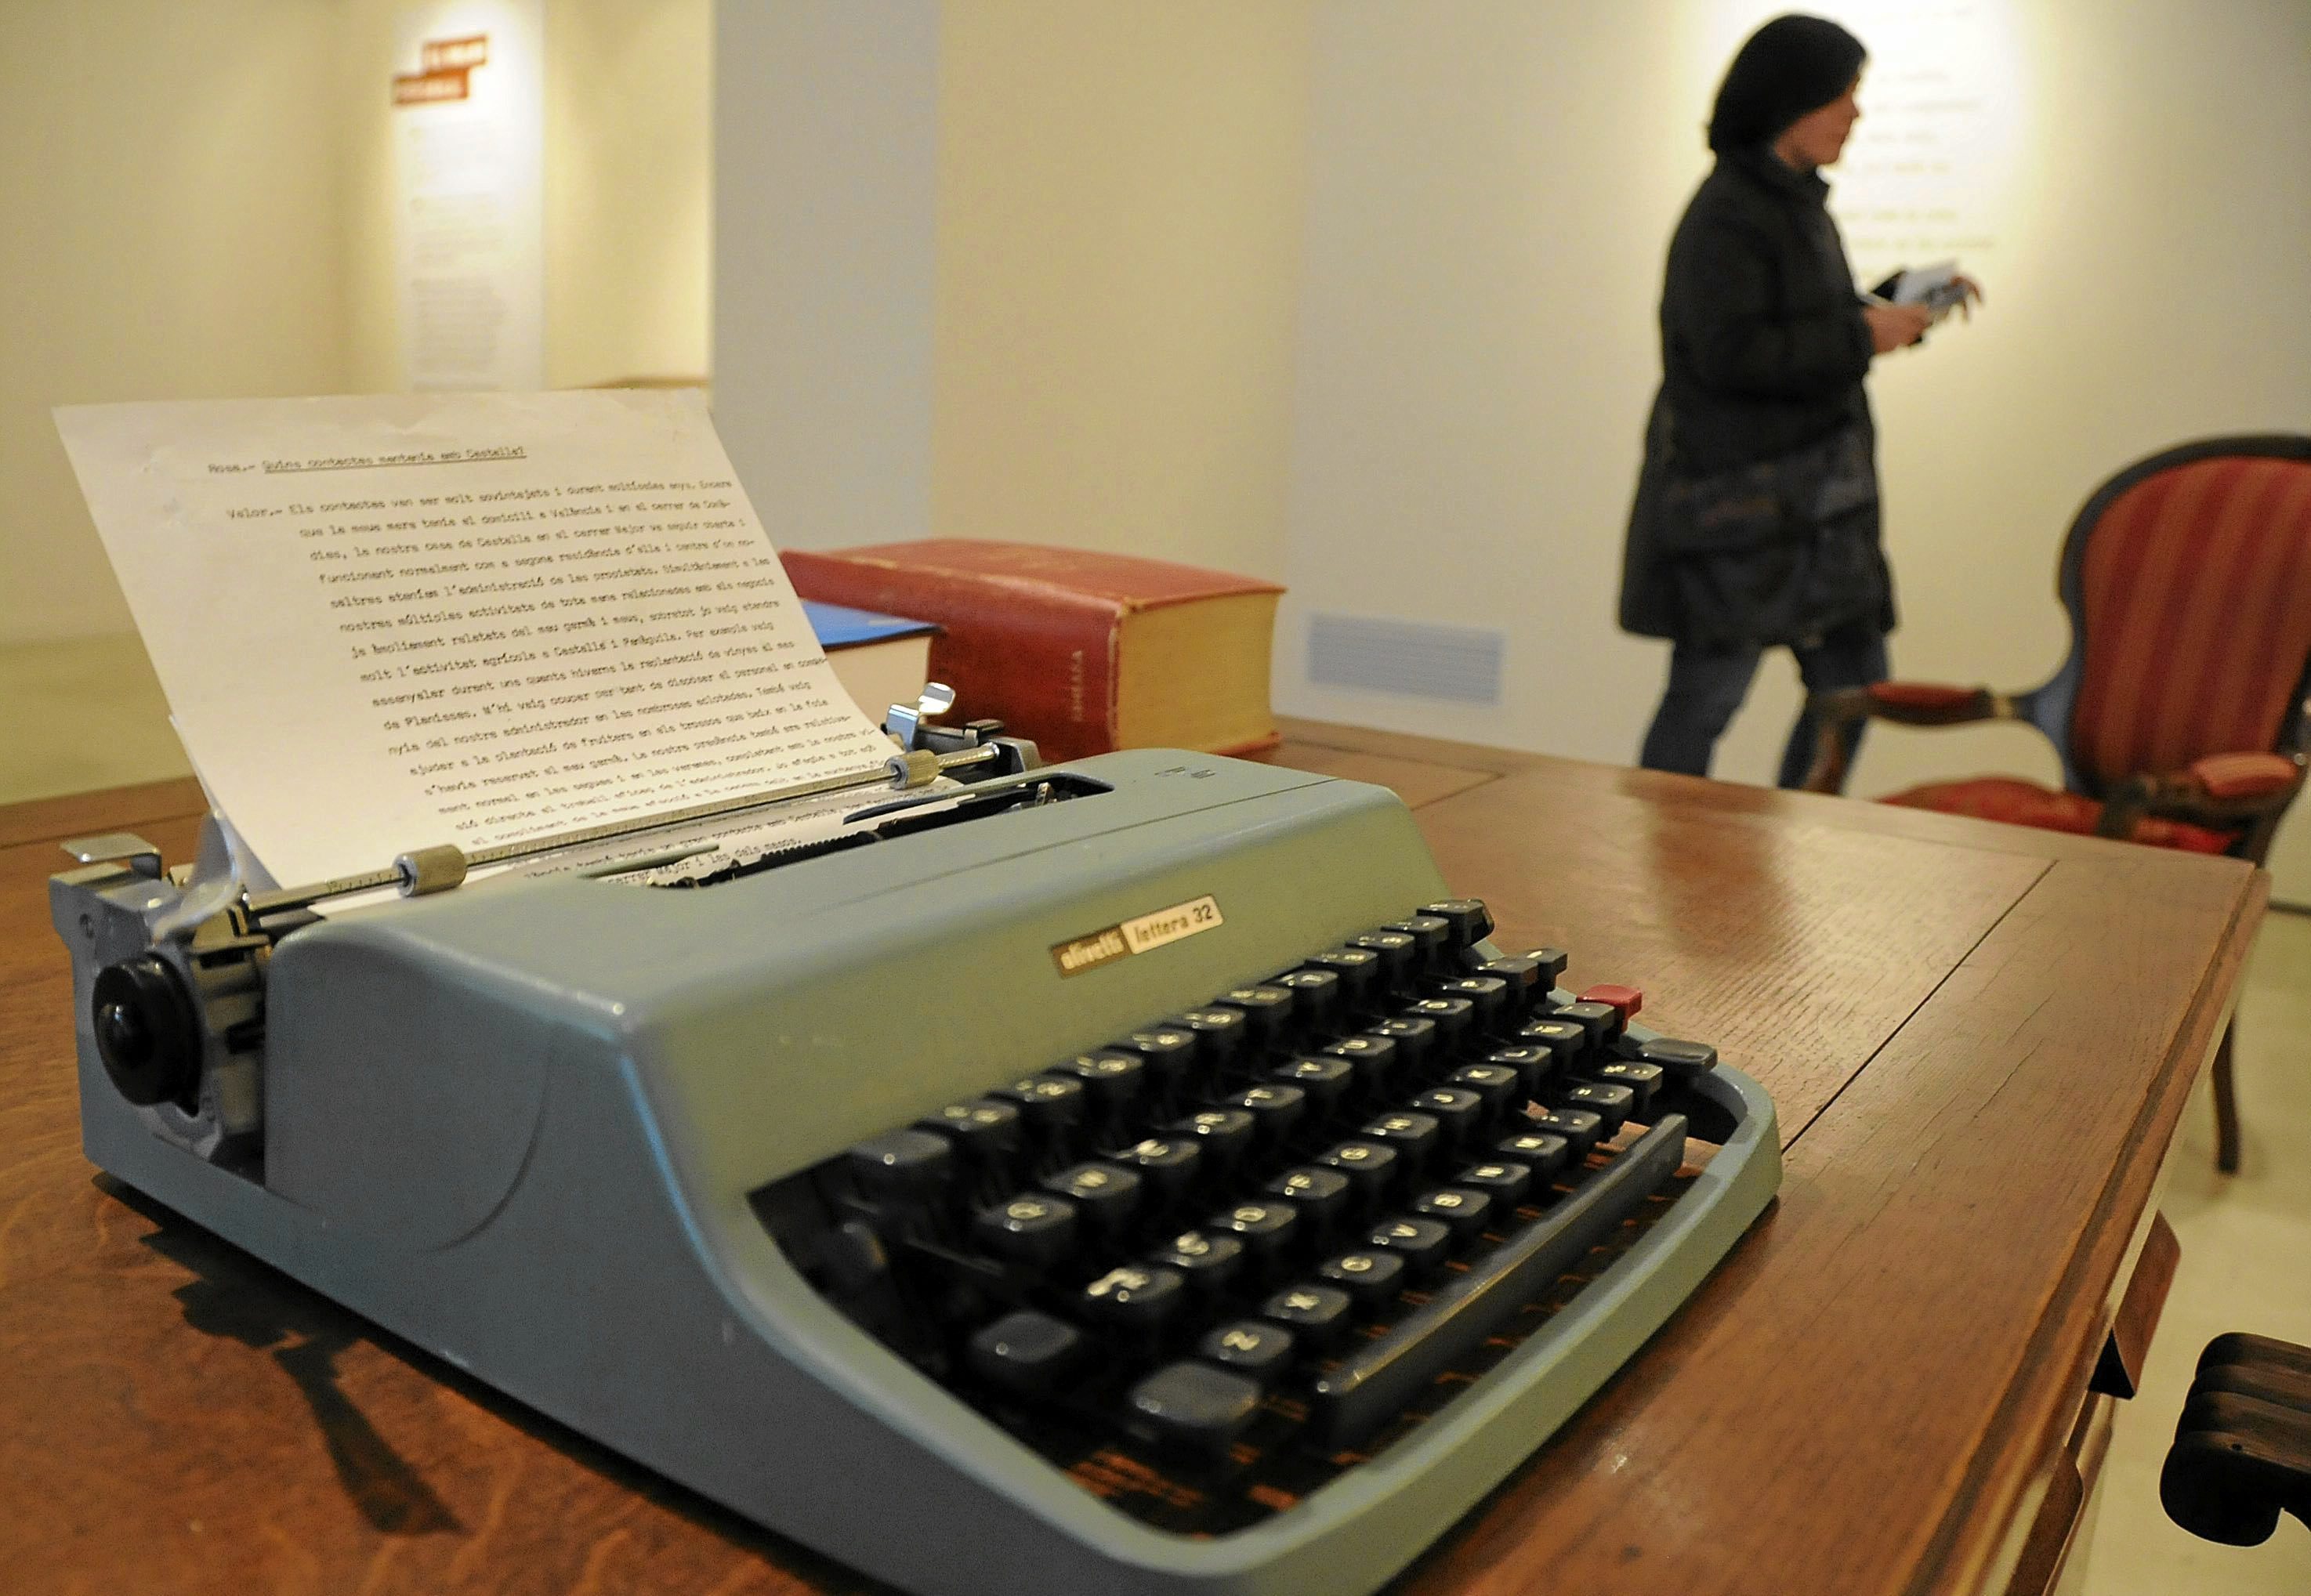 Quién fue y cómo vivió Olivetti, el inventor de la famosa máquina de  escribir